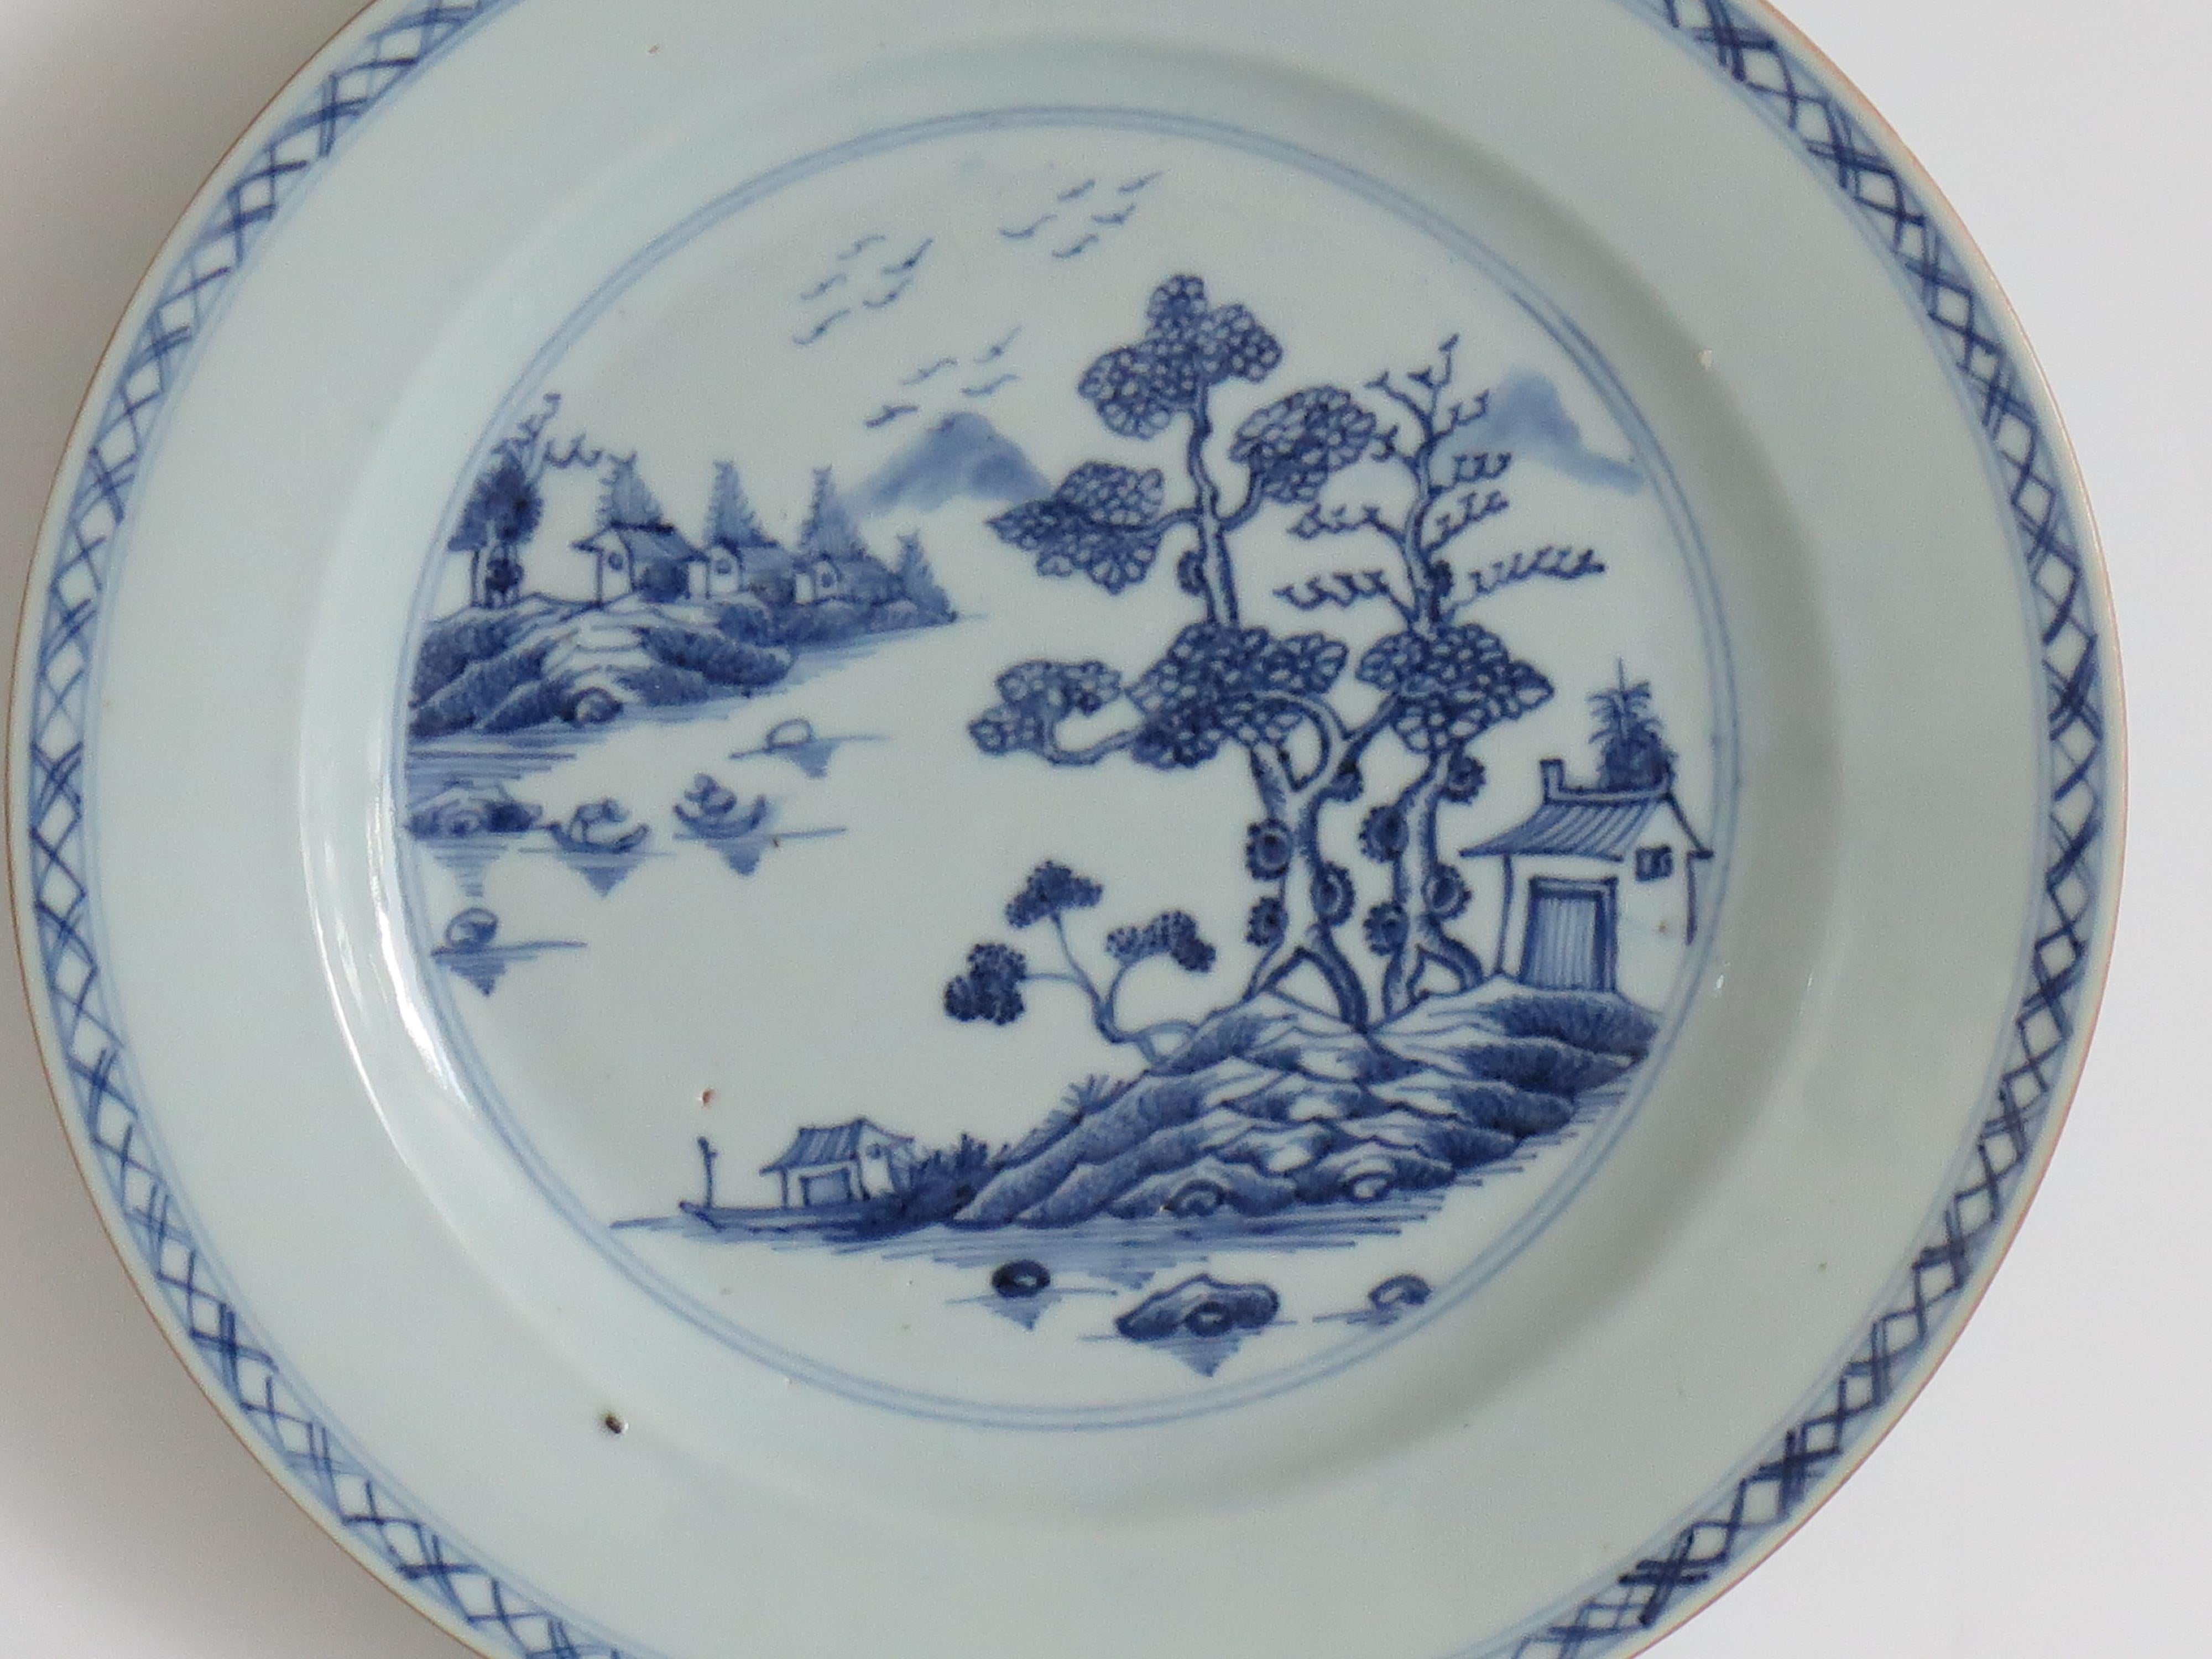 Es handelt sich um einen sehr gut erhaltenen, handbemalten chinesischen Export-Porzellanteller mit einem typischen handgemalten Muster aus der zweiten Hälfte des 18. Jahrhunderts, Qing-Qianlong-Periode, um 1770.

Der Teller ist gut getöpfert mit